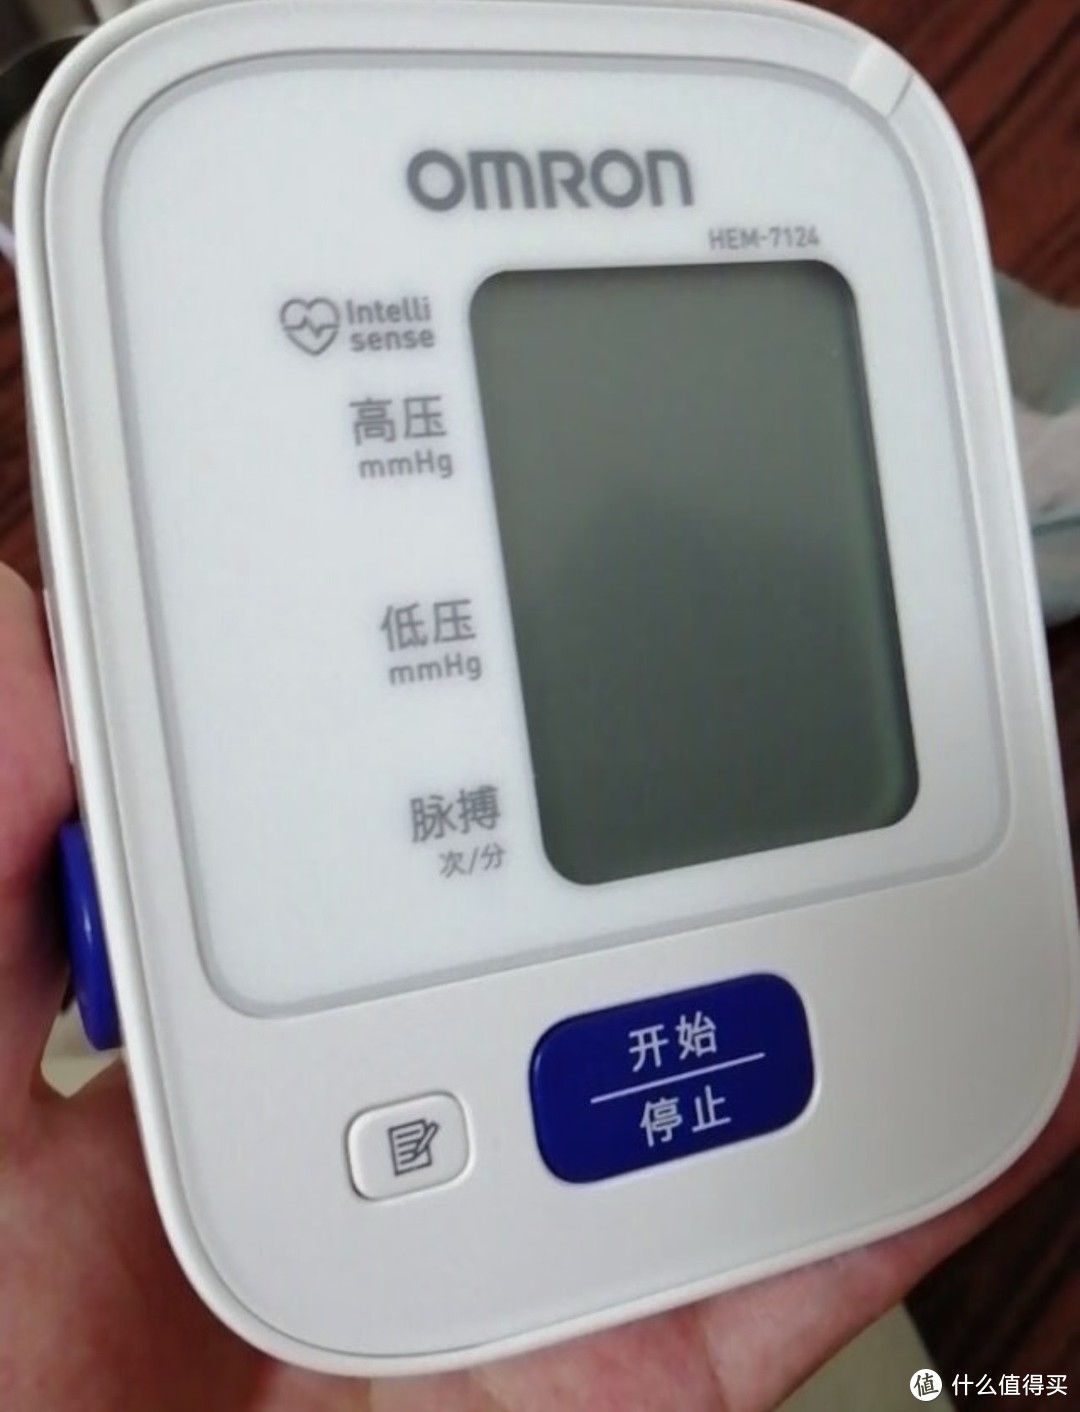 ￼￼欧姆龙(OMRON)雾化器儿童 雾化机家用成人医用 婴儿压缩式雾化泵吸入器NE-C900(经典医用款)￼￼